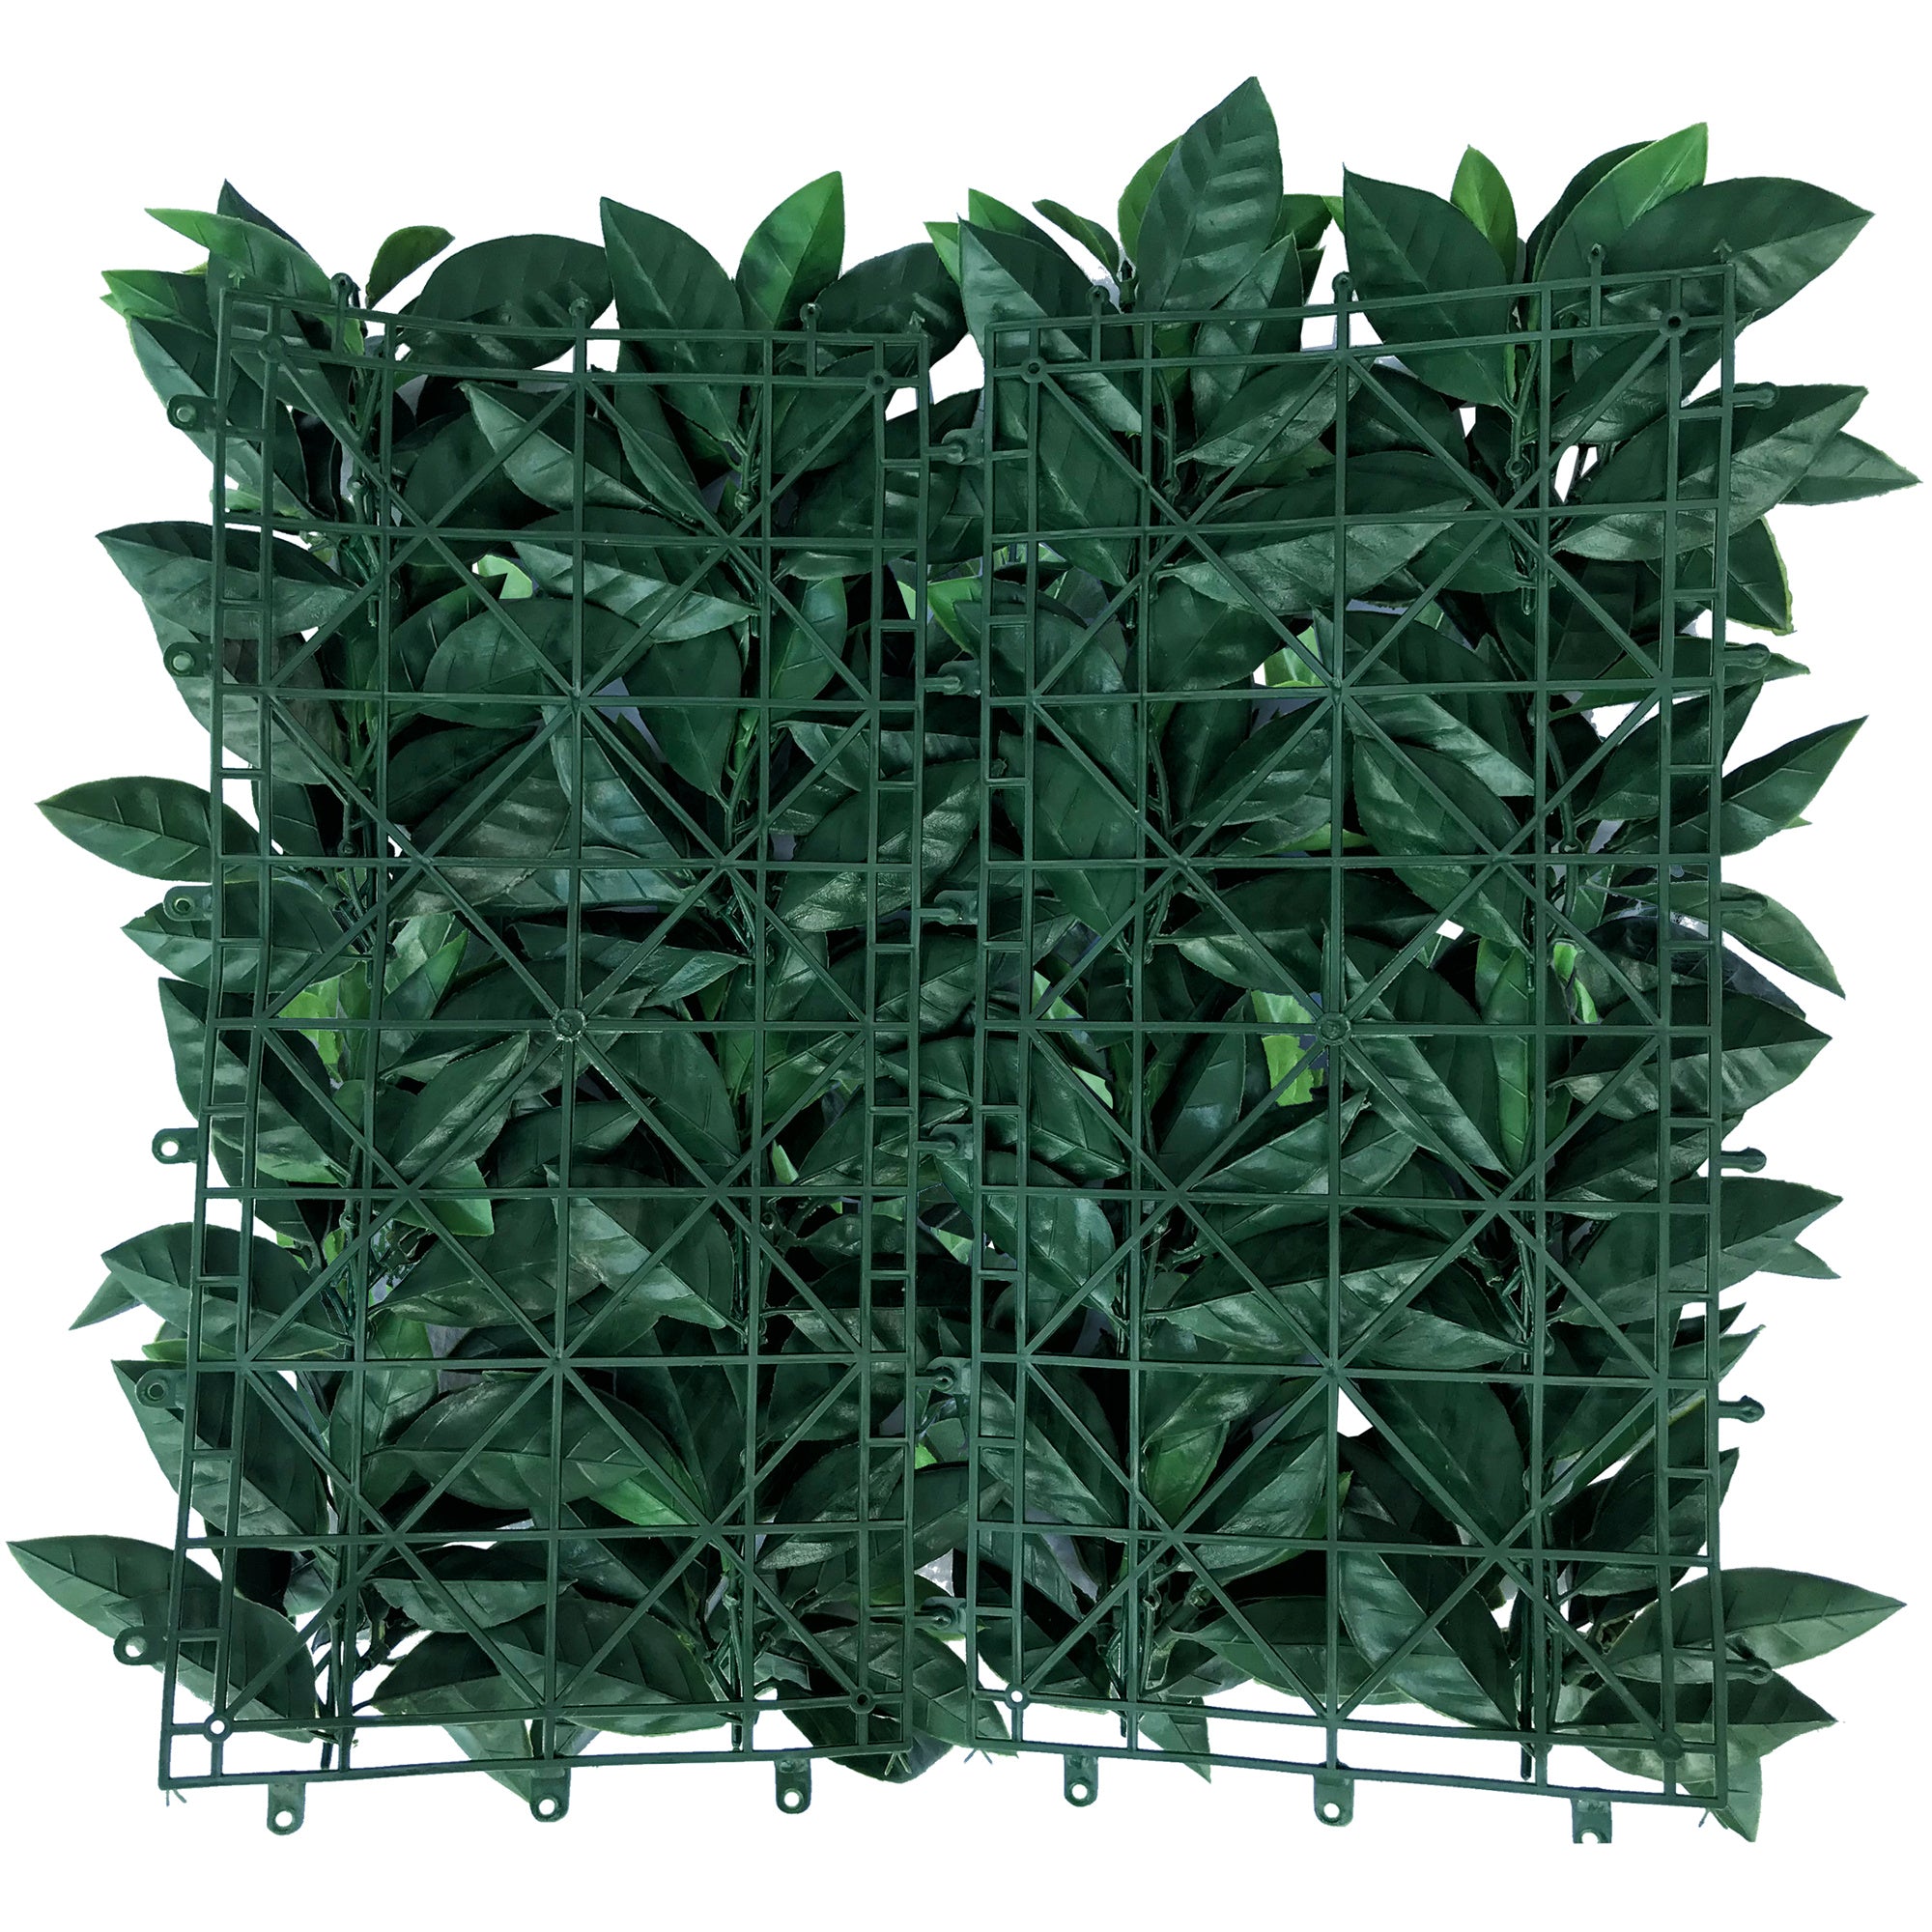 Pasto mural artificial premium verde 50 x 50 cm con protección UV